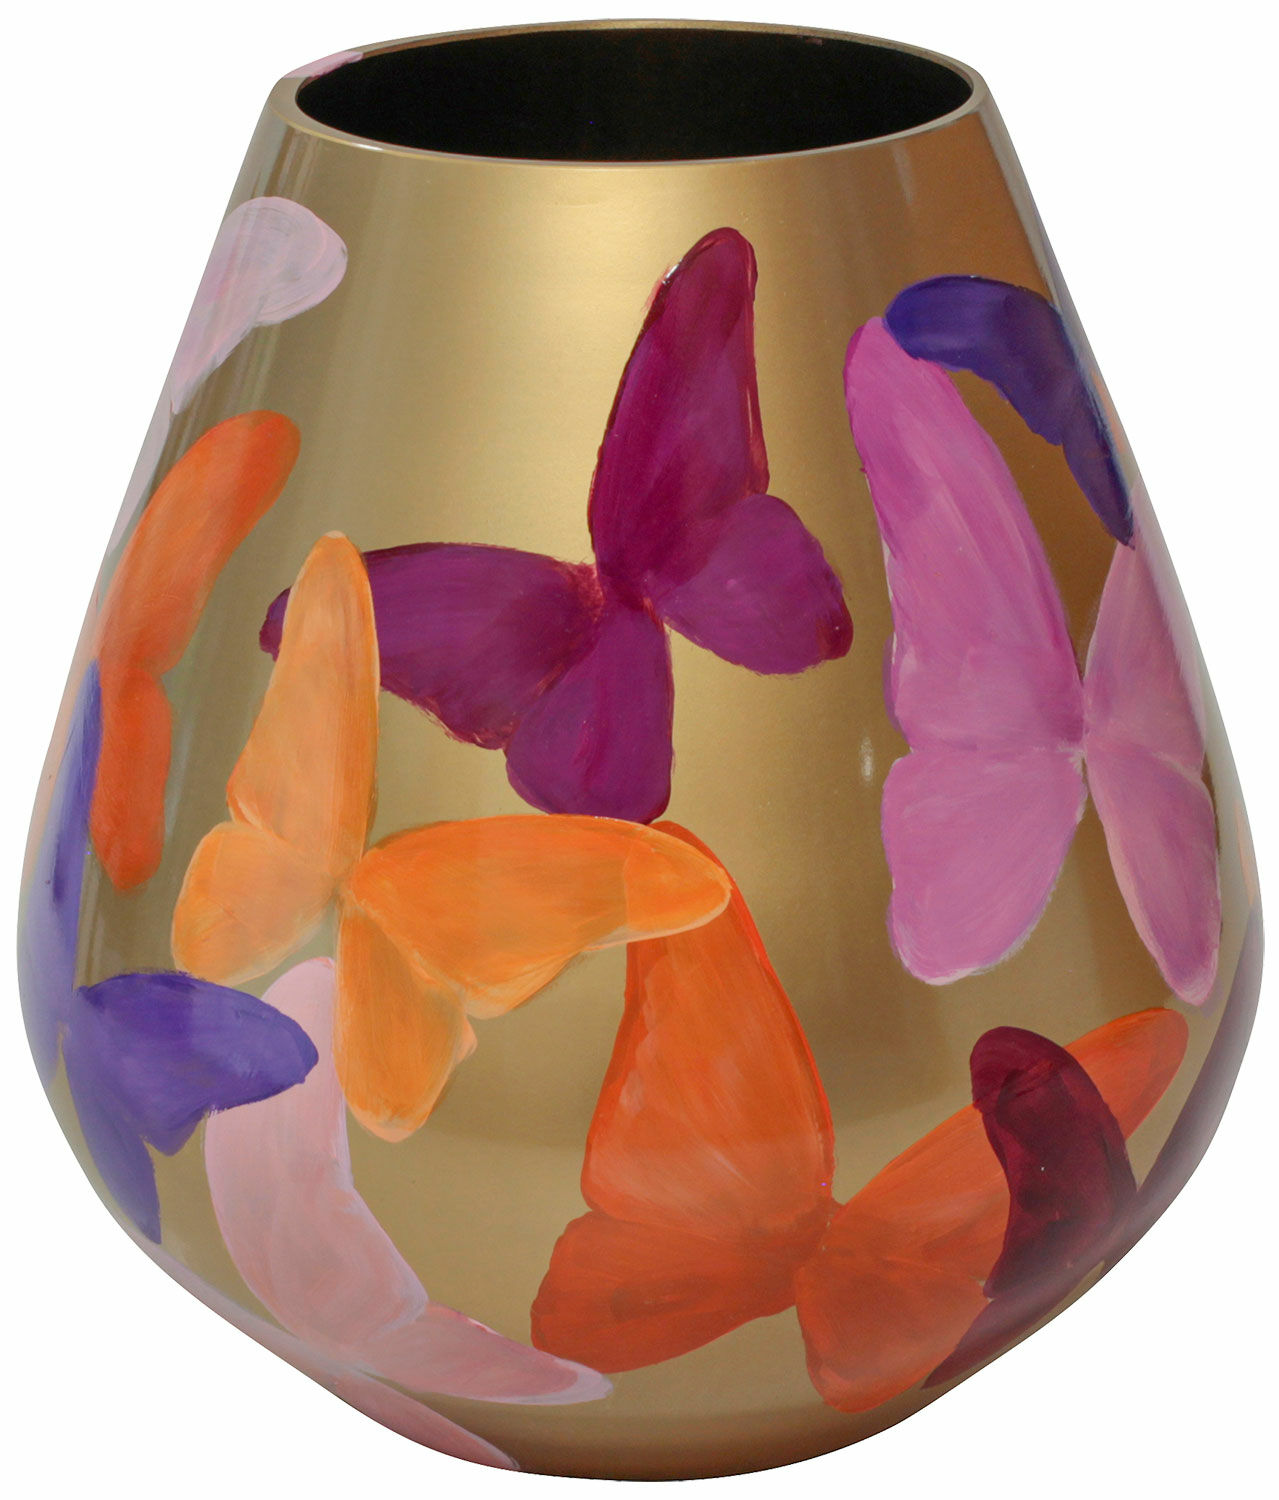 Glazen vaas "Vlinder" von Milou van Schaik Martinet